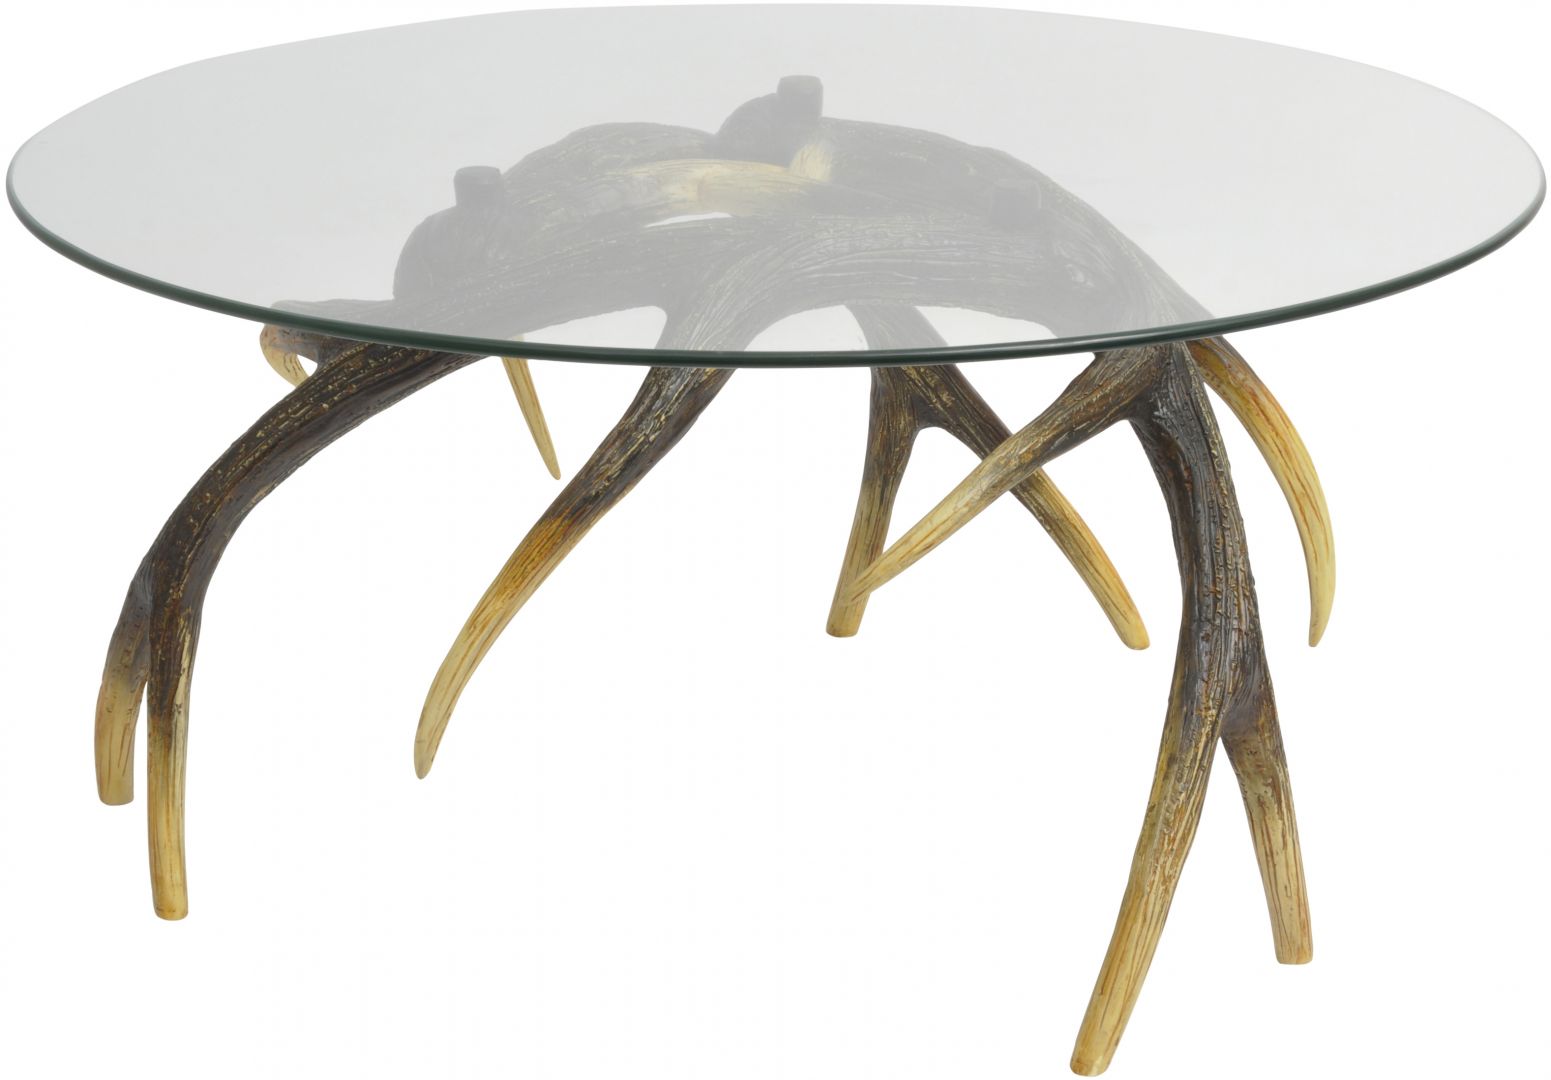 Szklany blat stolika oparty jest na podstawie przypominającej rogi jelenia. Fot. Artisanti